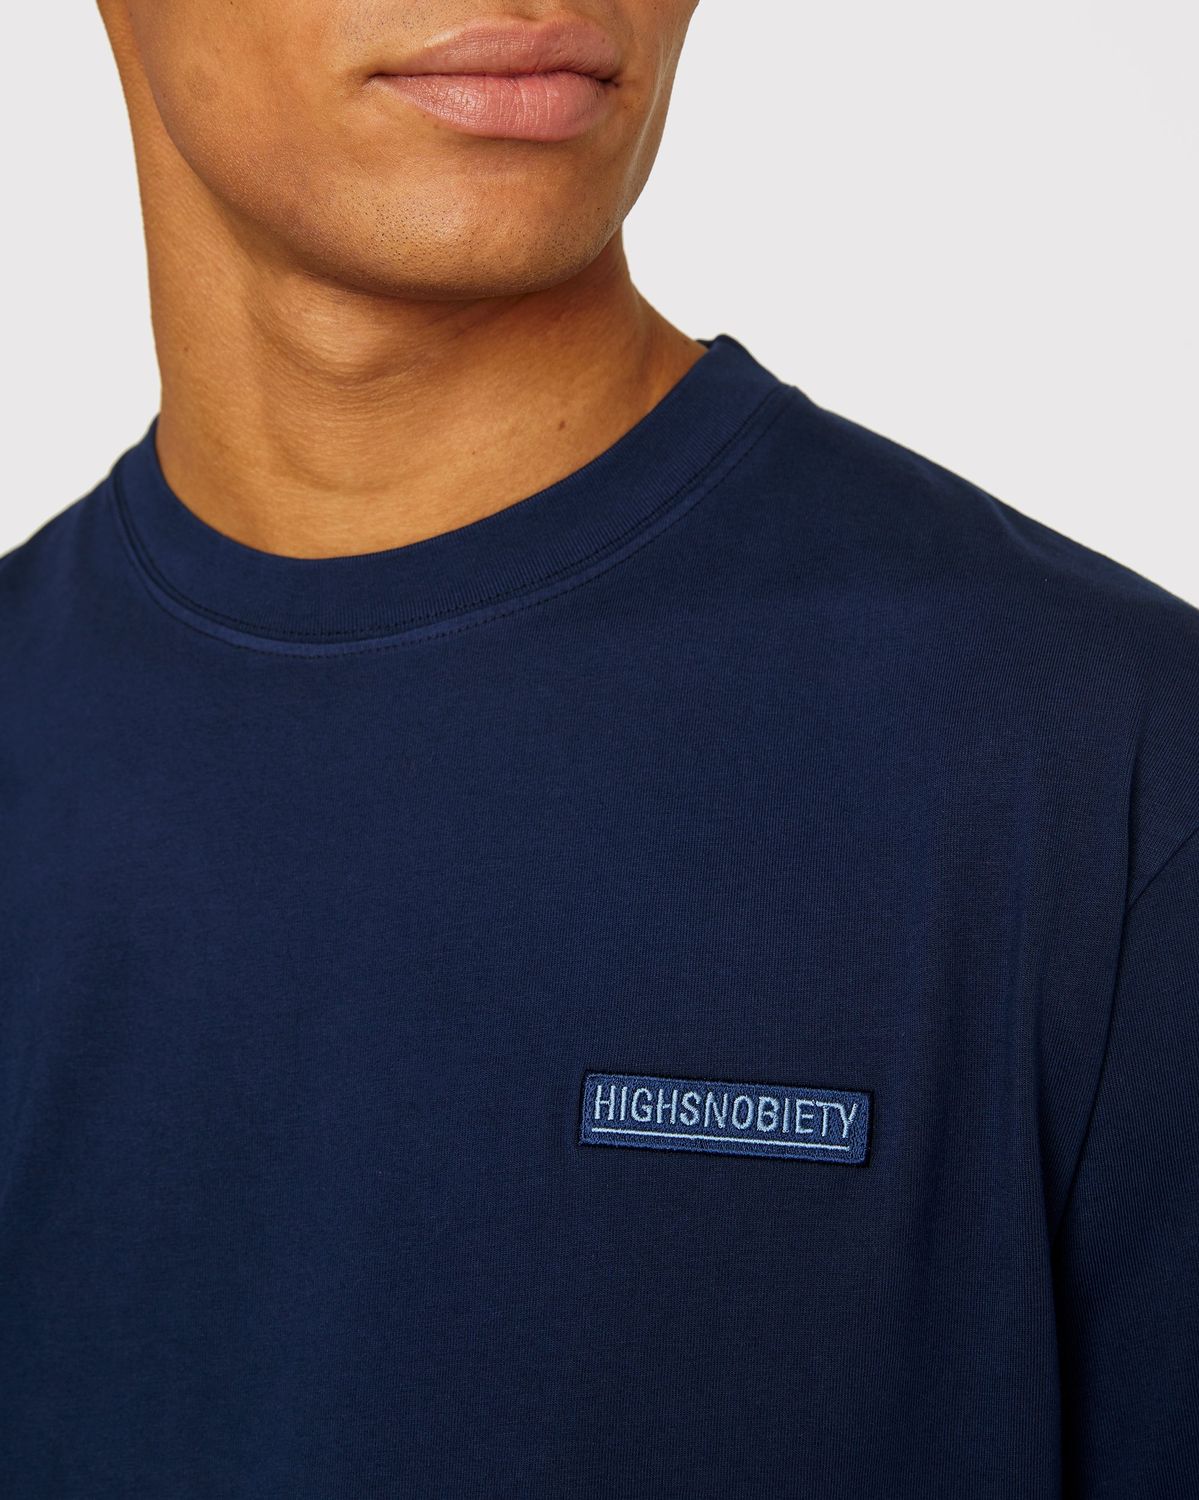 Highsnobiety – Staples T-Shirt Navy - Image 5